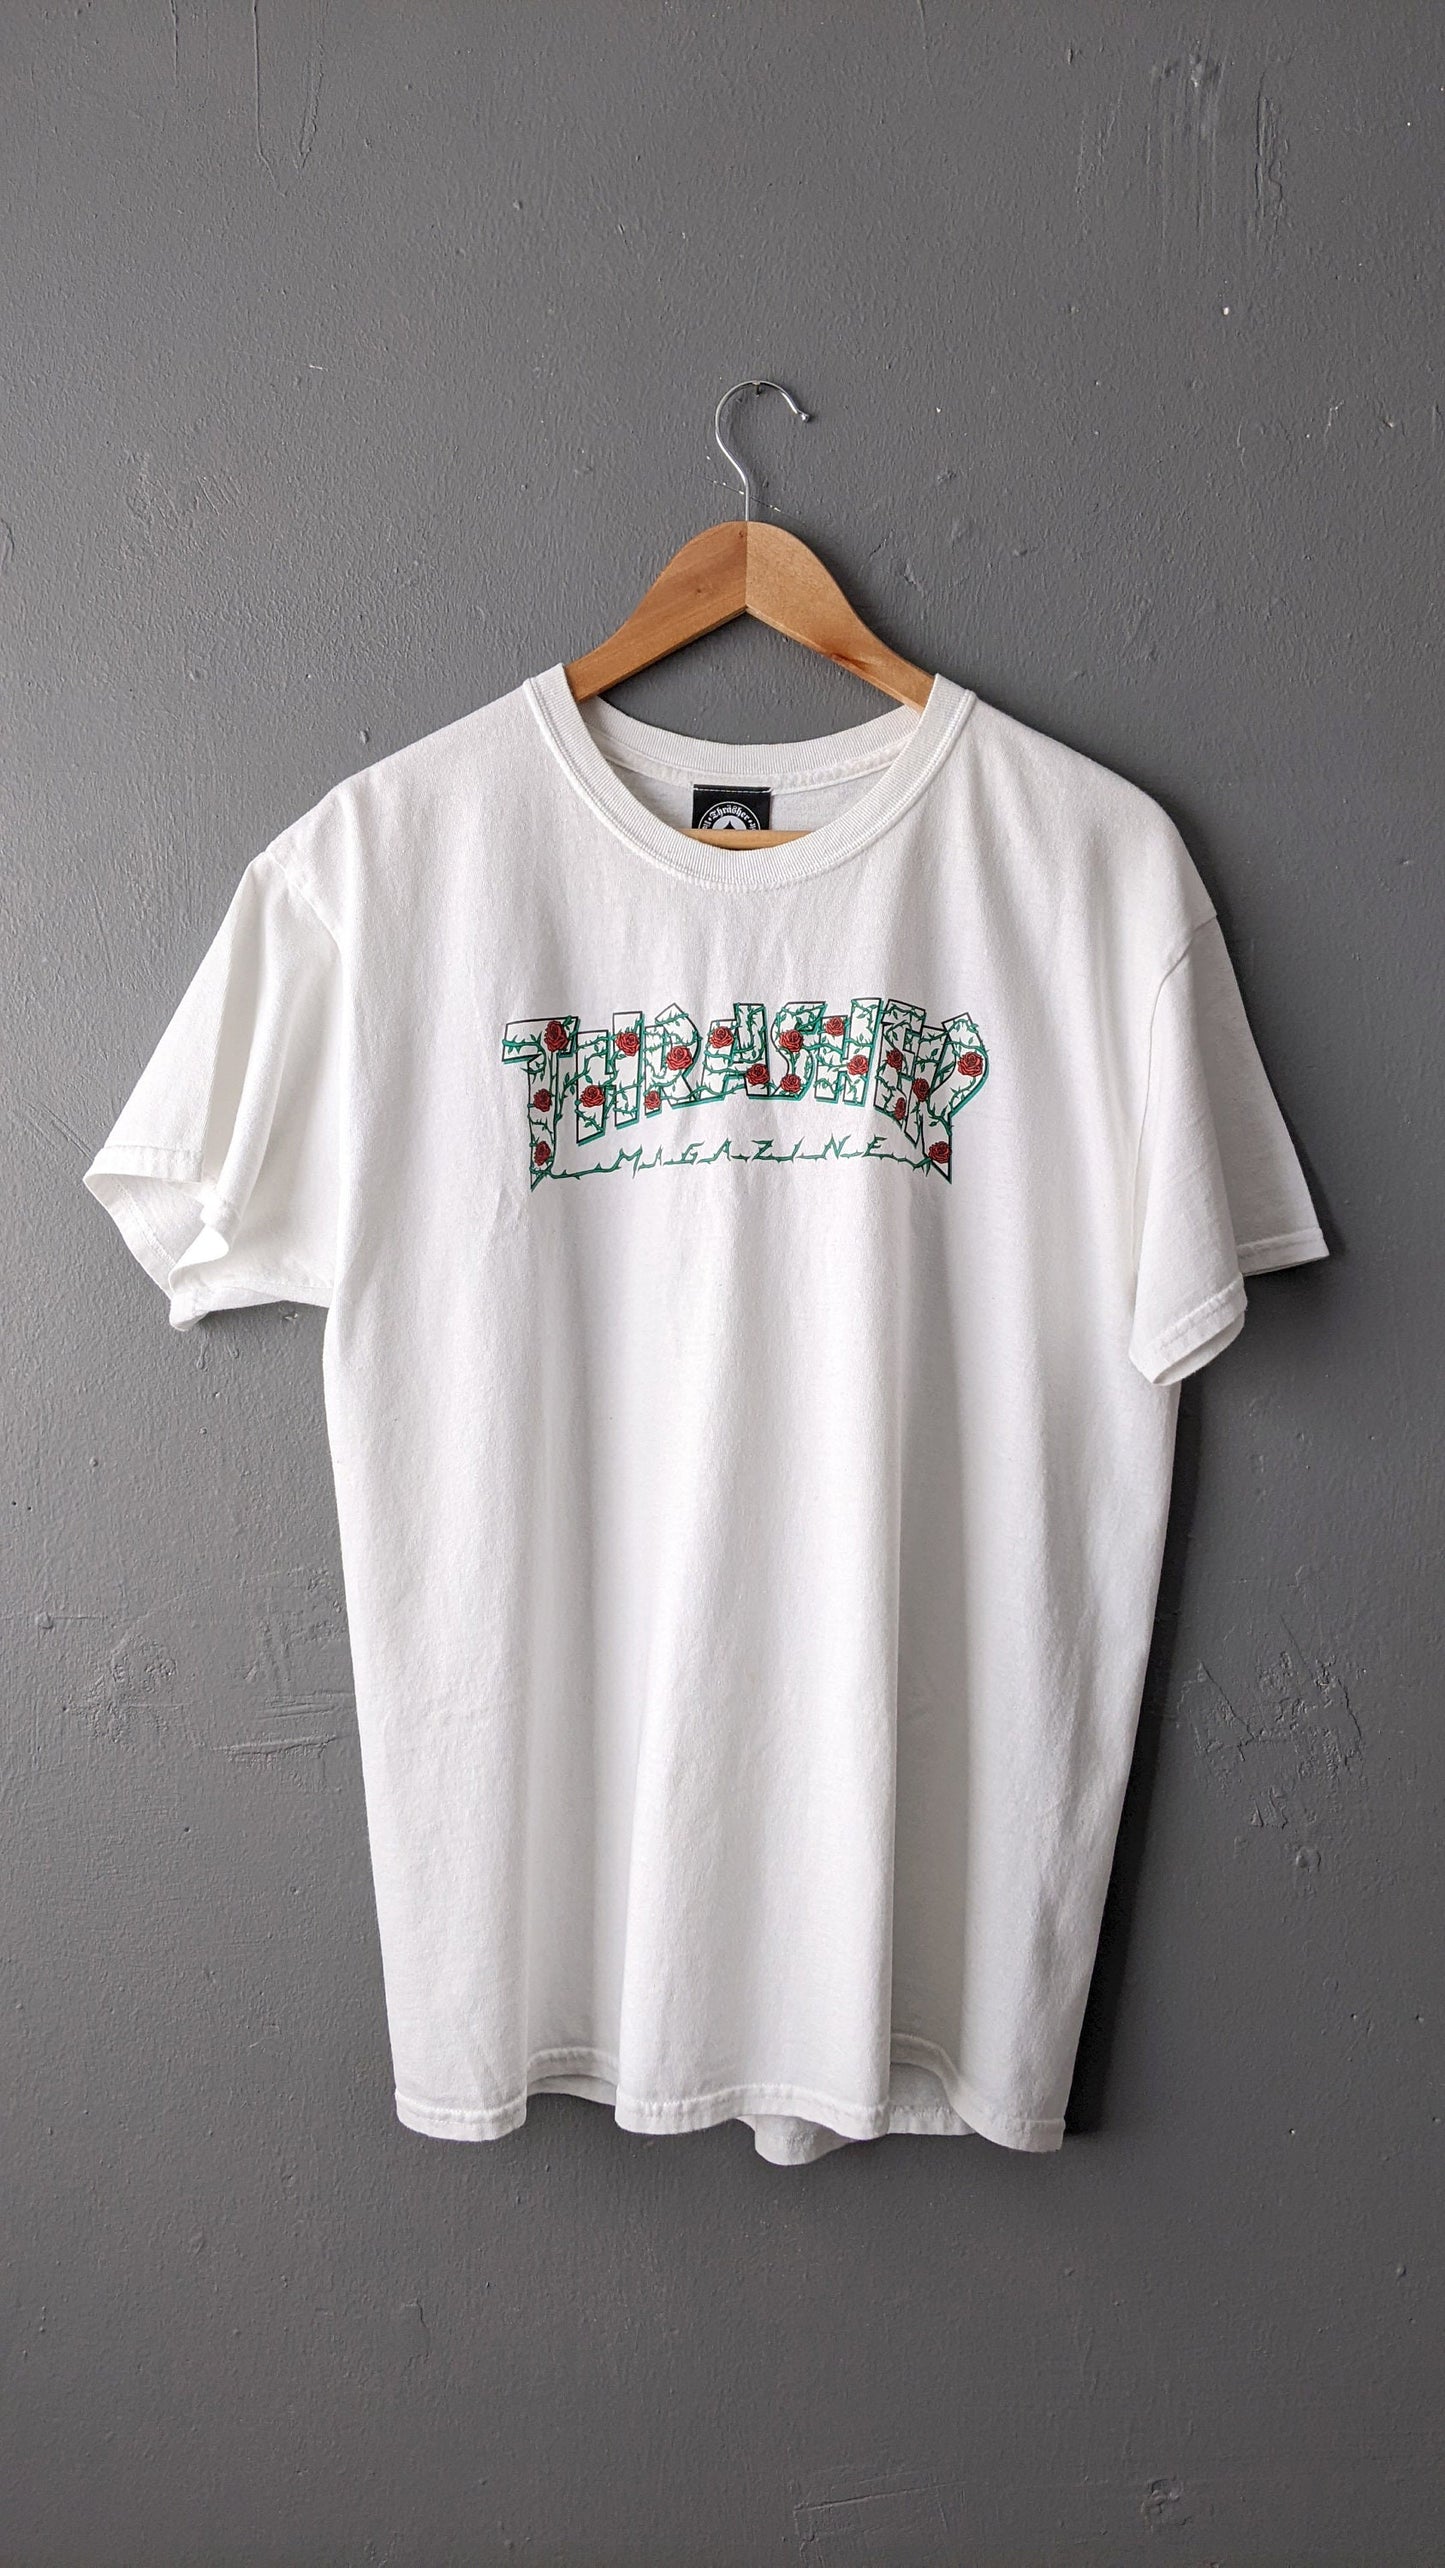 Vintage Thrasher Magazine T shirt, Roses Logo, Skateboarding Tee, Size Medium Large